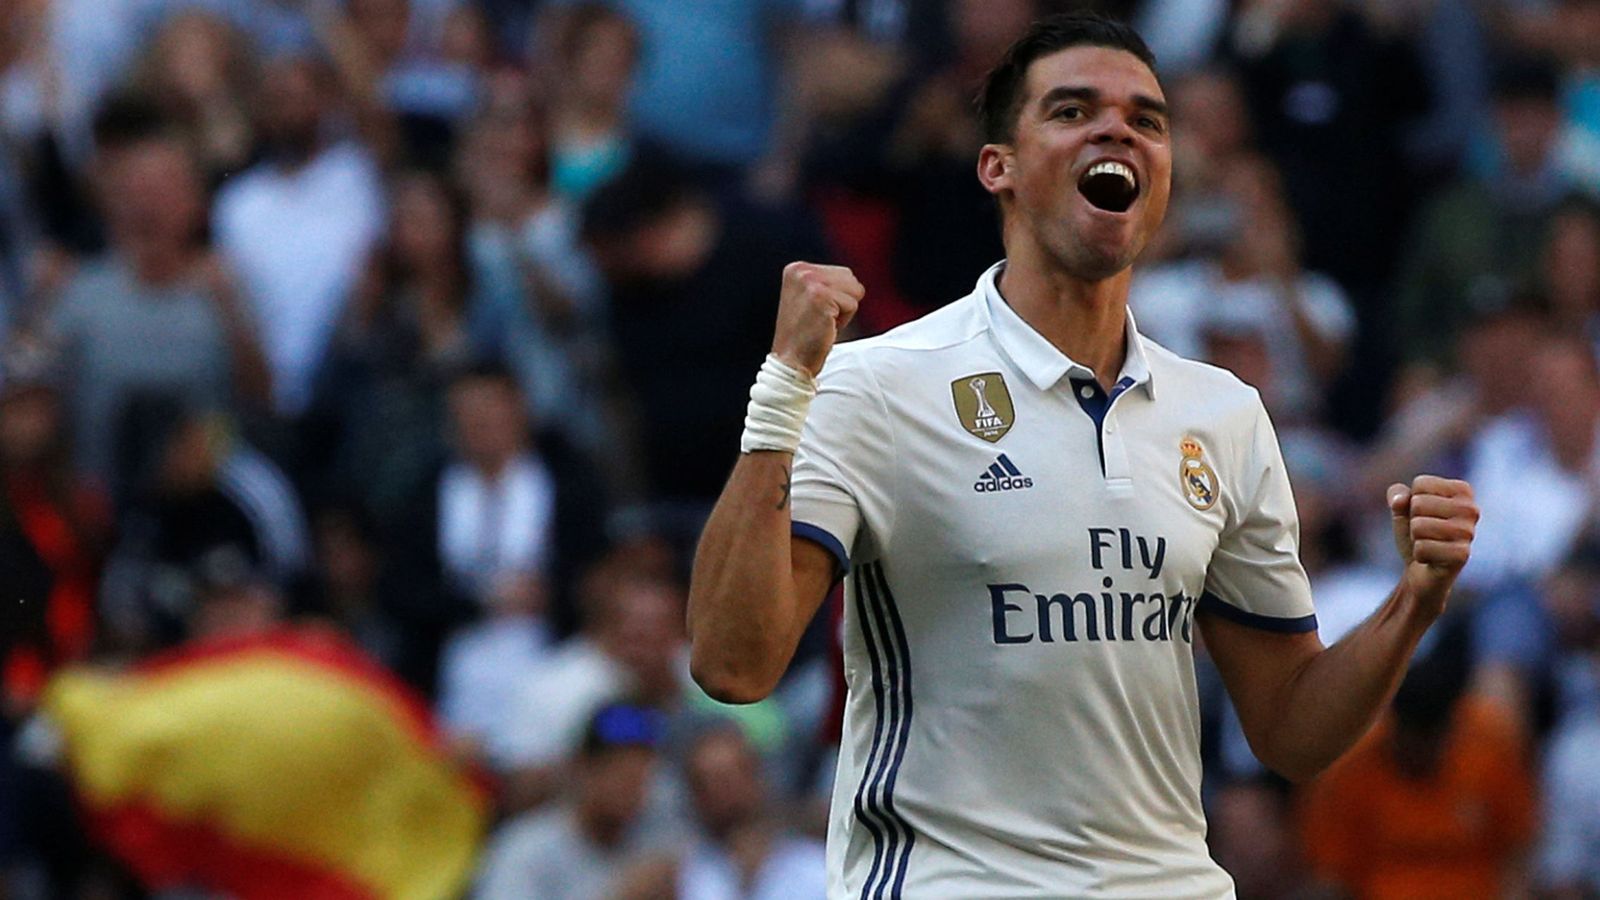 Foto: Pepe celebra el gol marcado en el derbi. (Reuters)